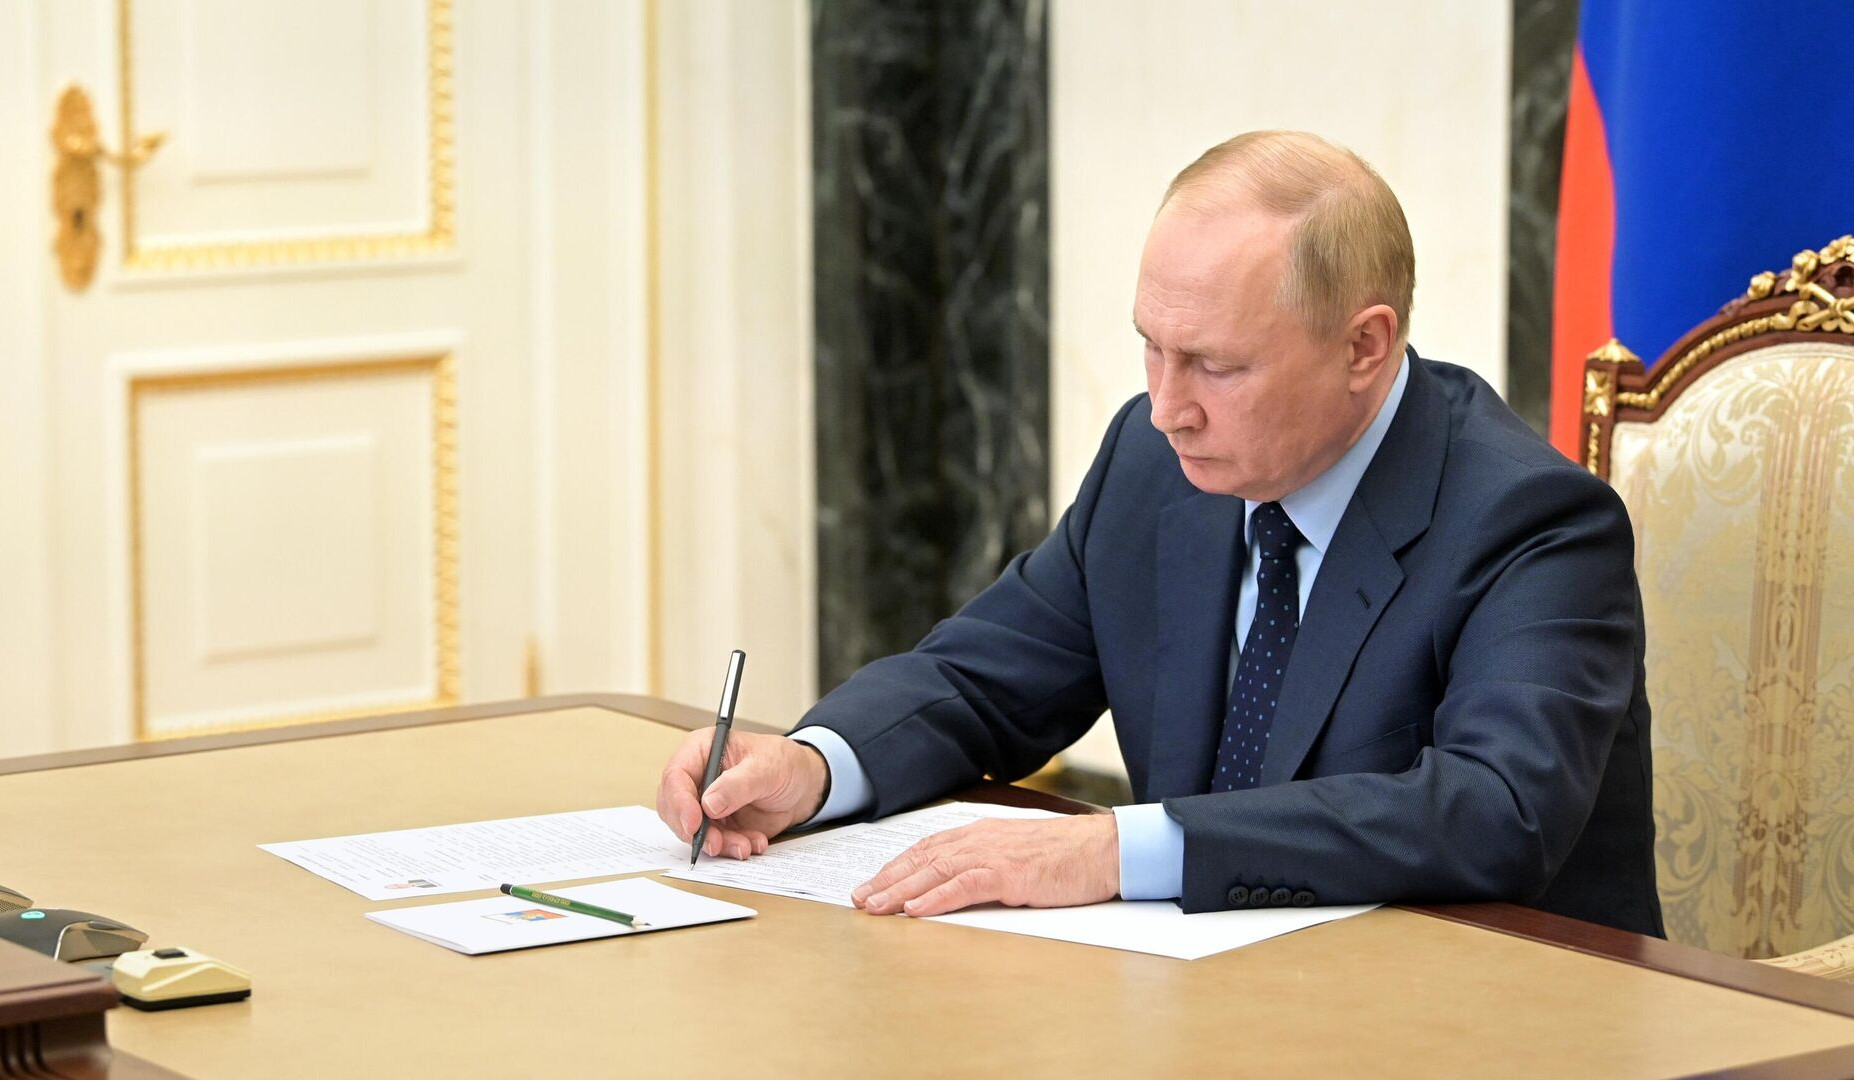 Պուտինը ստորագրել է Ռազմավարական հարձակողական սպառազինությունների կրճատման պայմանագրին Ռուսաստանի մասնակցության կասեցման օրենքը